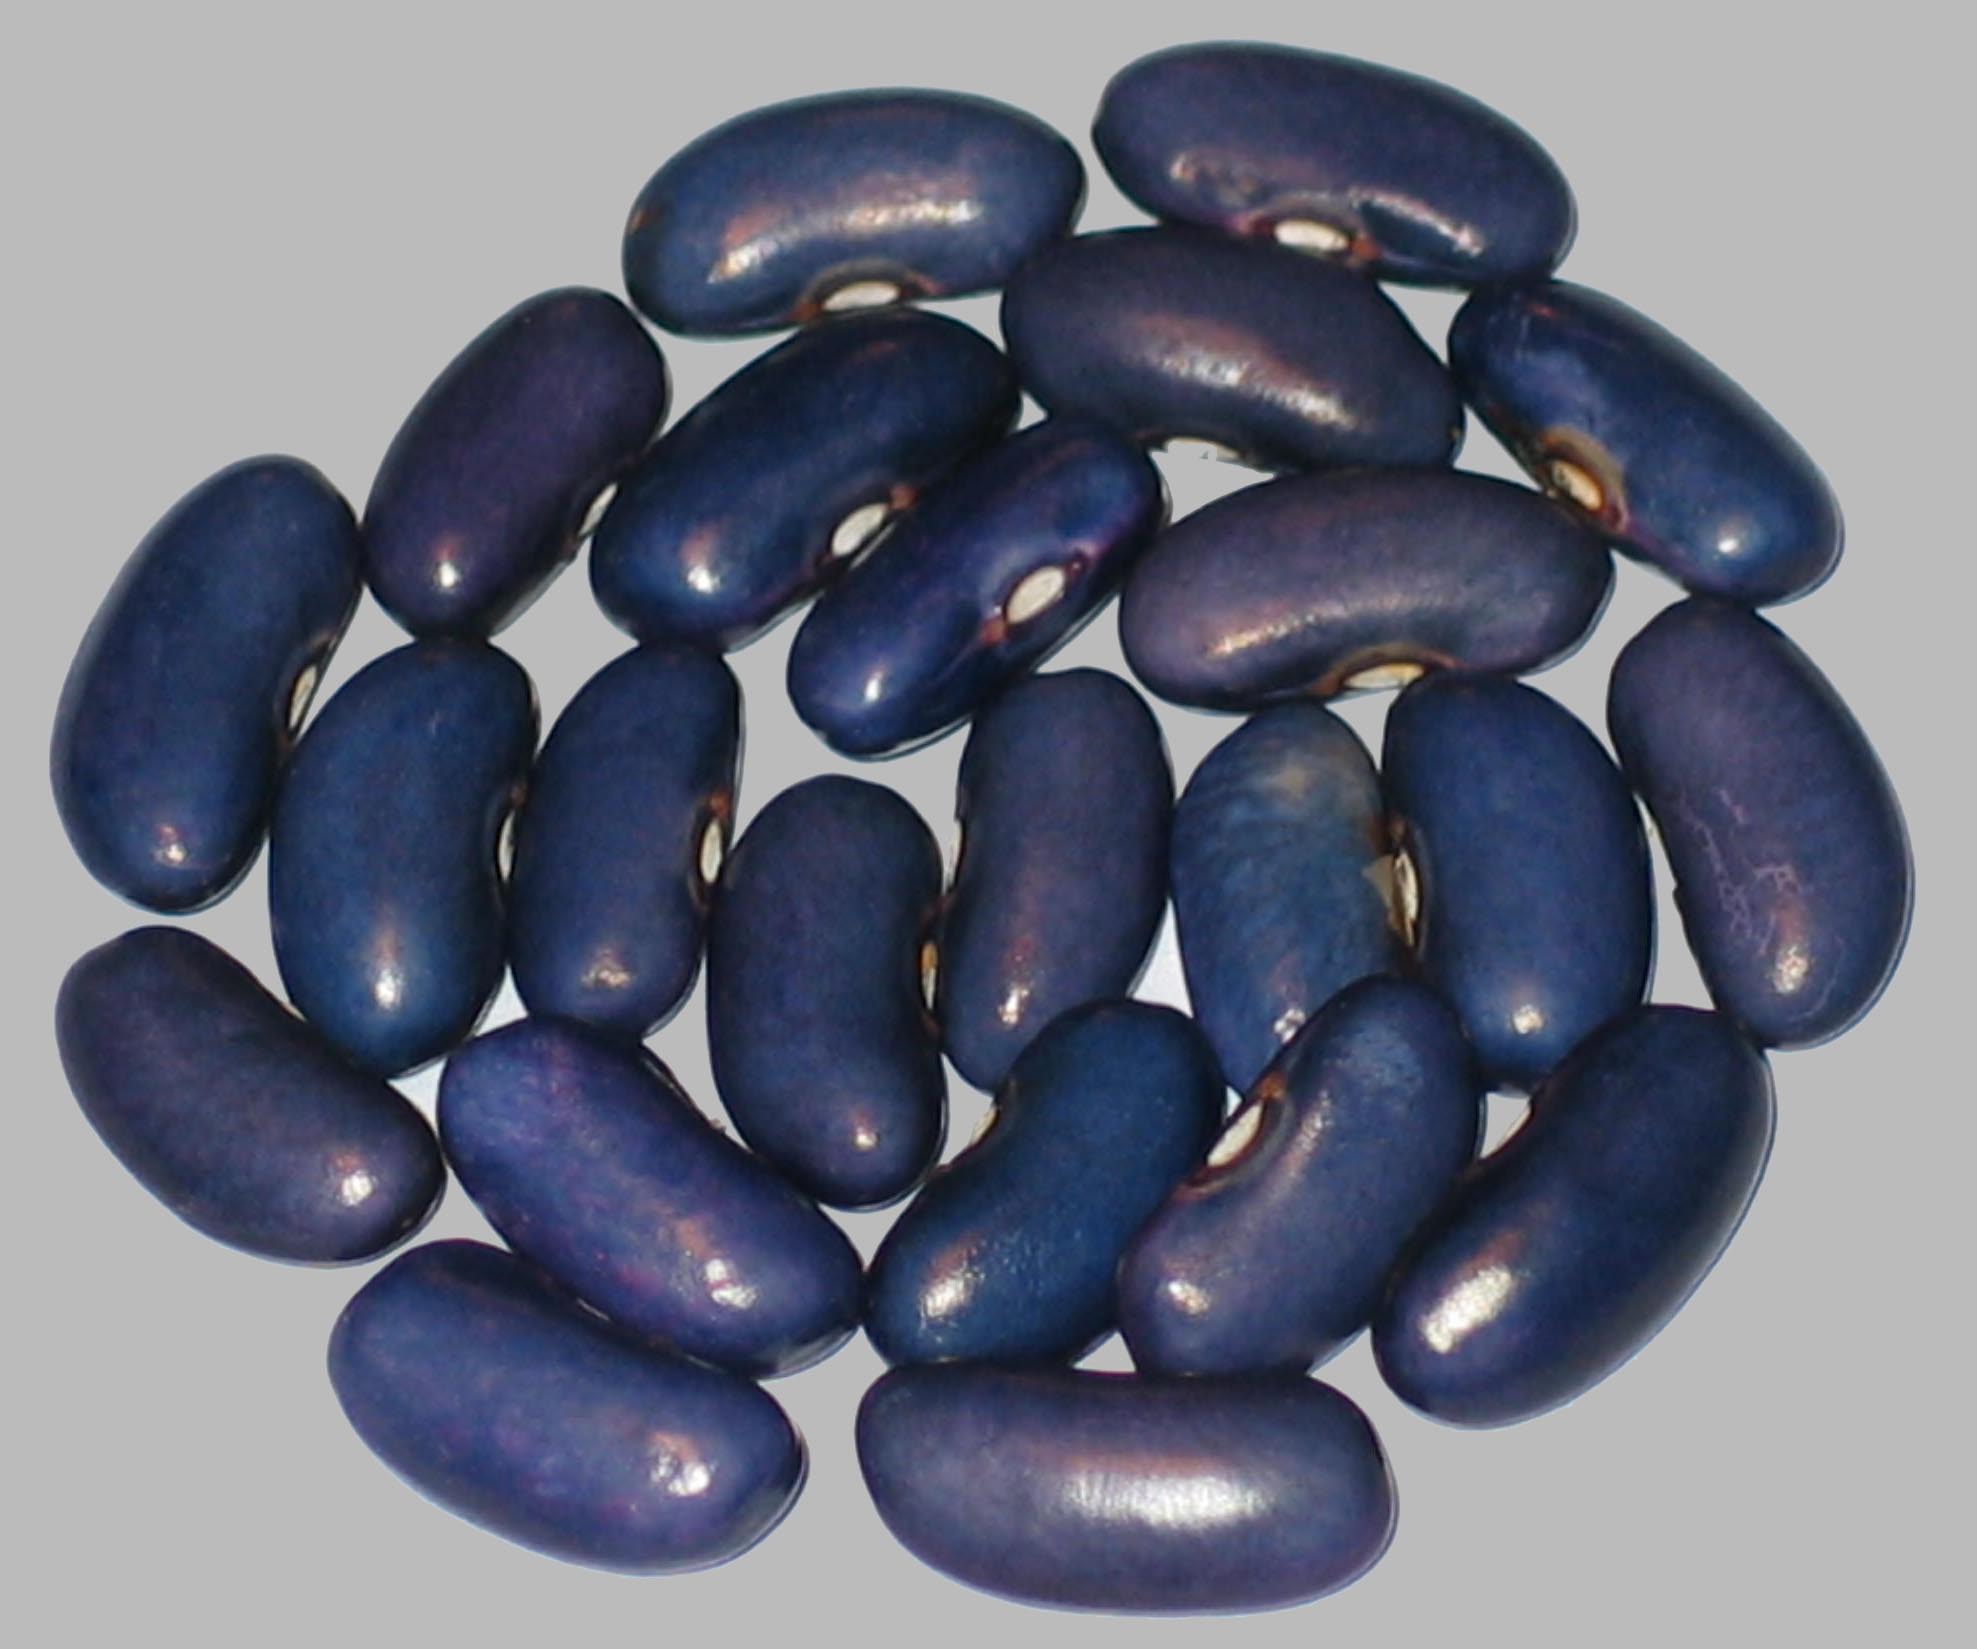 image of Sacre Bleu beans